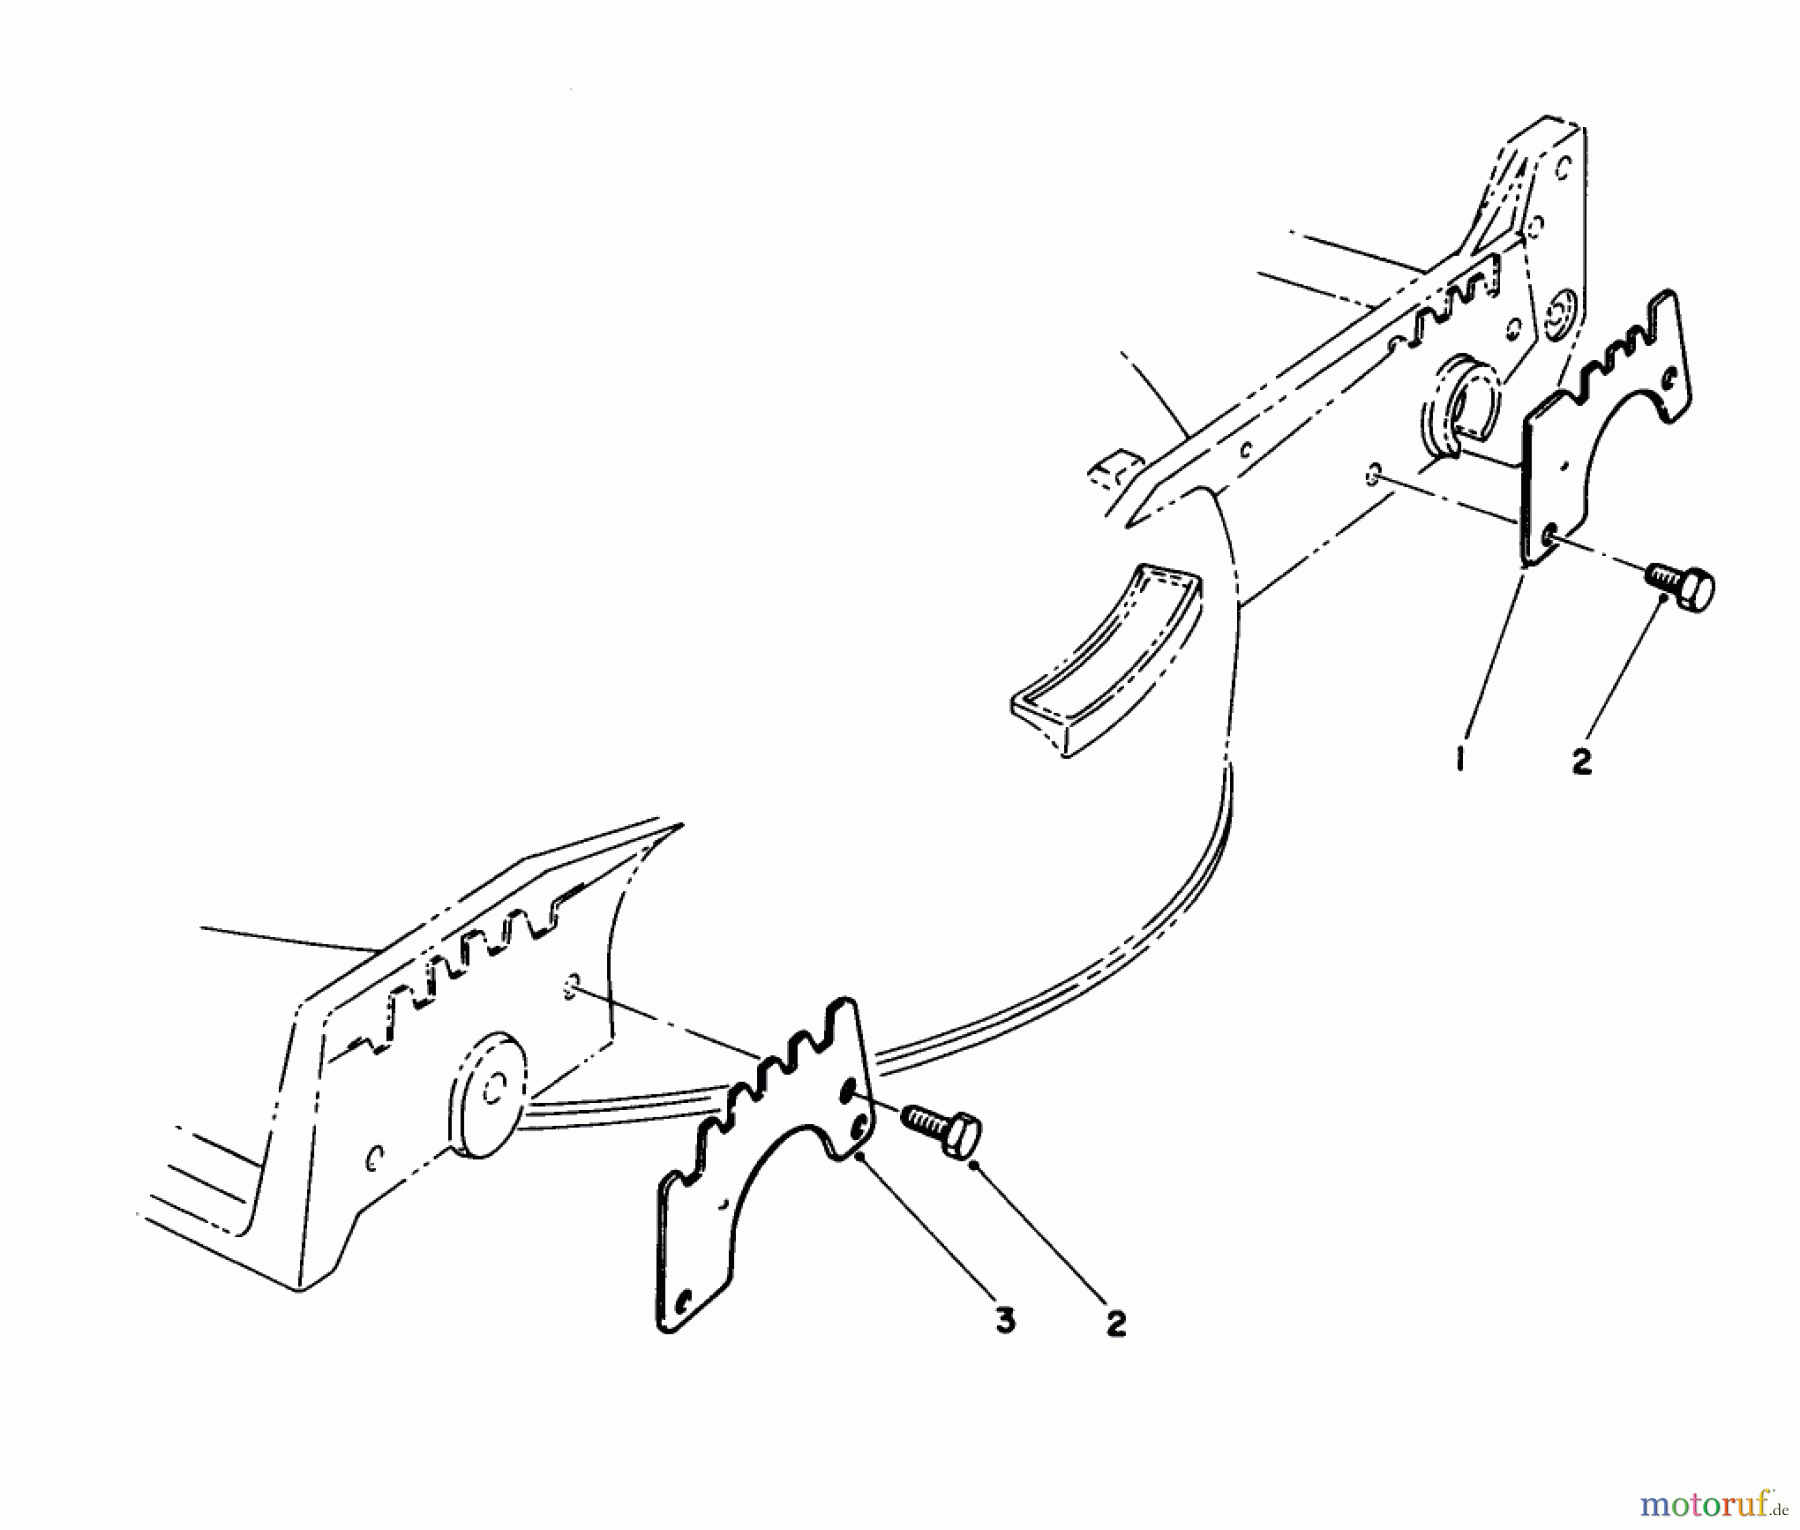  Toro Neu Mowers, Walk-Behind Seite 1 20622 - Toro Lawnmower, 1990 (0000001-0003101) WEAR PLATE MODEL NO 49-4080 (OPTIONAL)